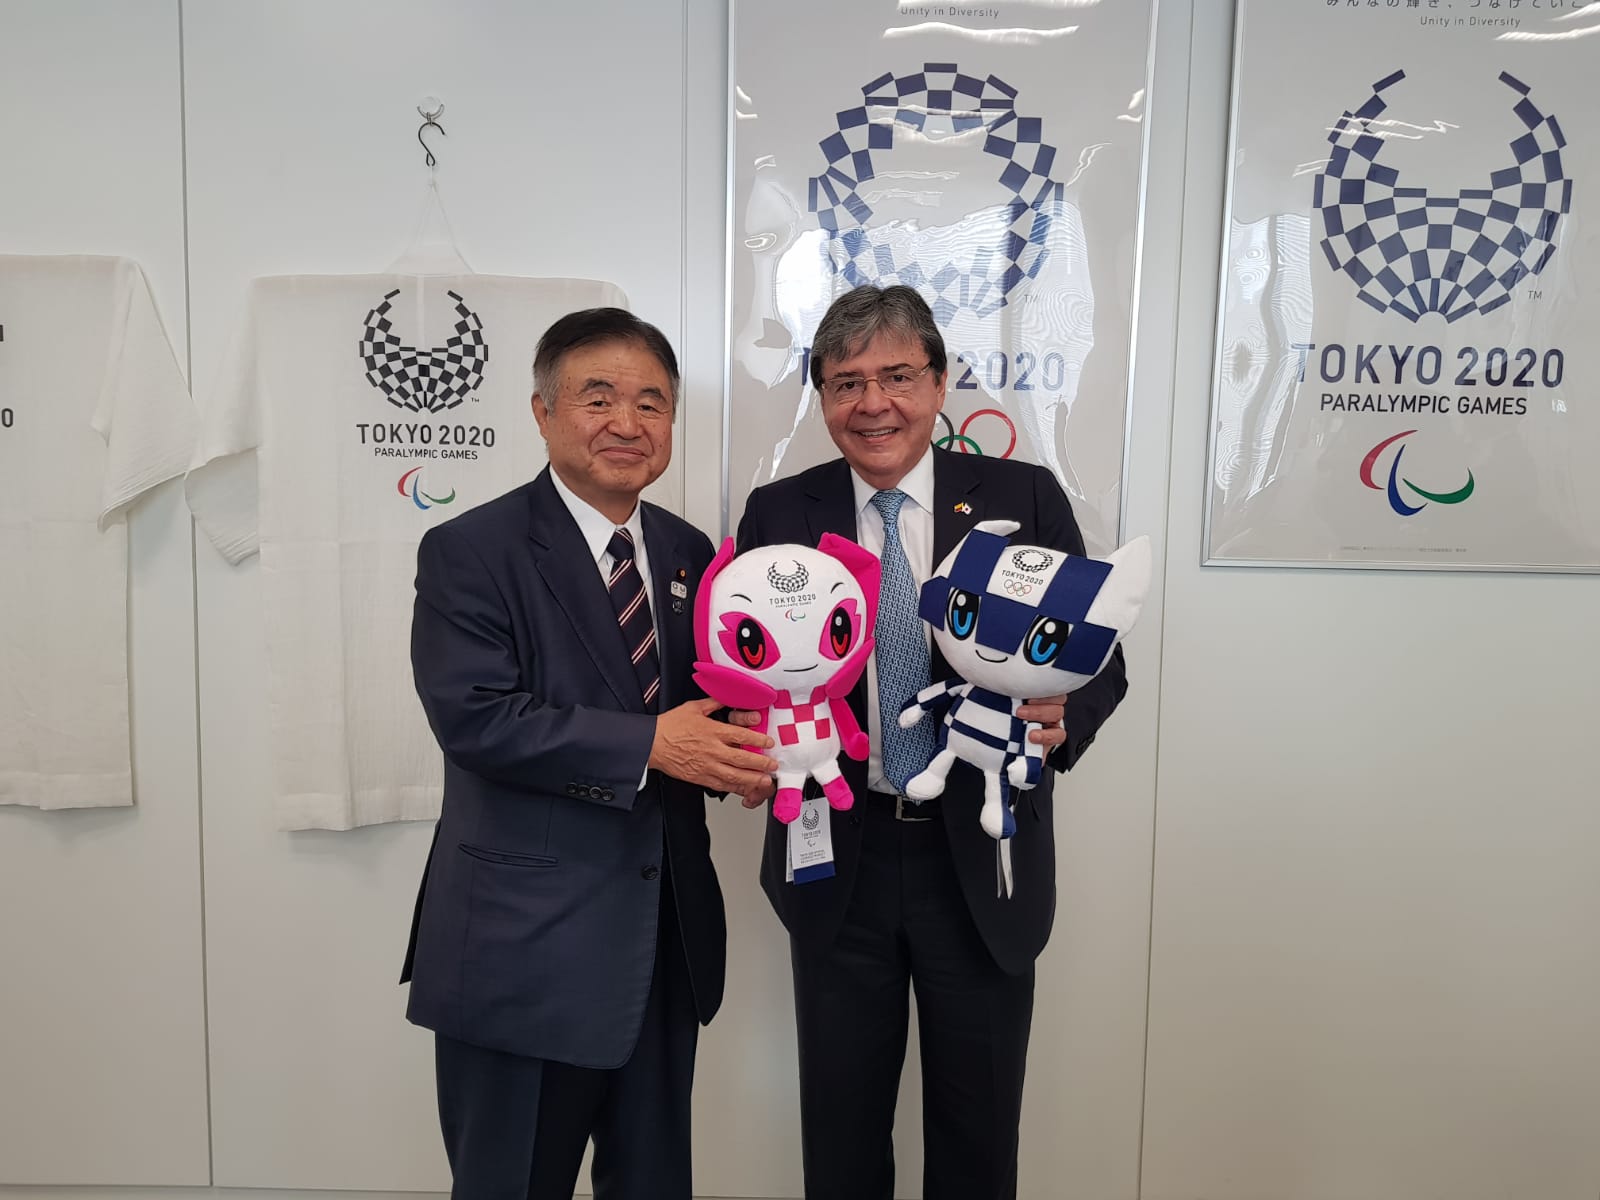 Canciller dialogó con el Ministro Encargado de los Juegos Olímpicos y Paralímpicos de Japón sobre cooperación deportiva y apoyo a los atletas colombianos que nos representarán en los Juegos de Tokio 2020